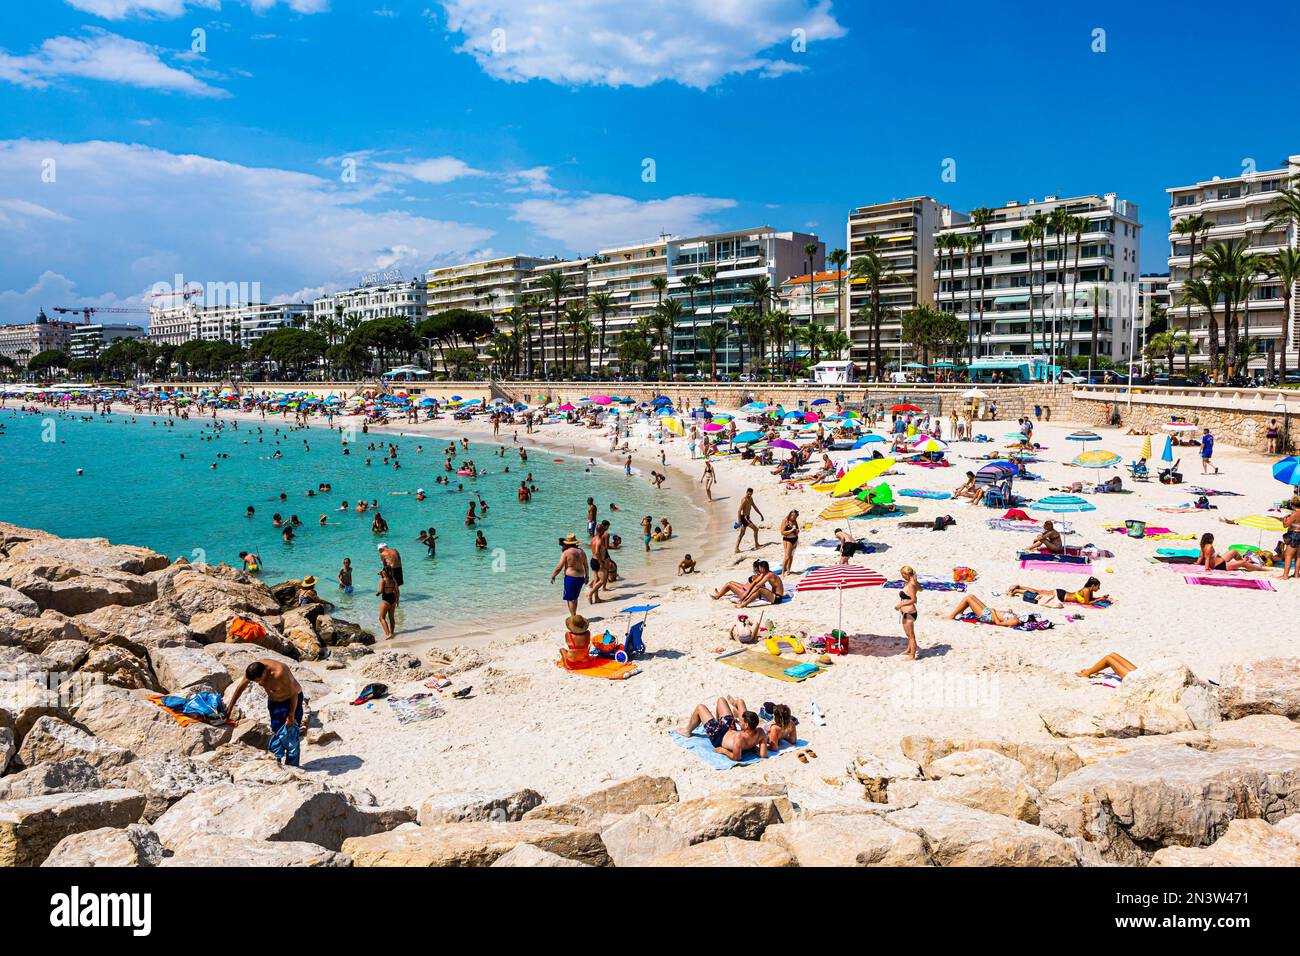 Public bathing beach on Boulevard de la Croisette, Cannes, Provence-Alpes-Cote dAzur, South of France Stock Photo